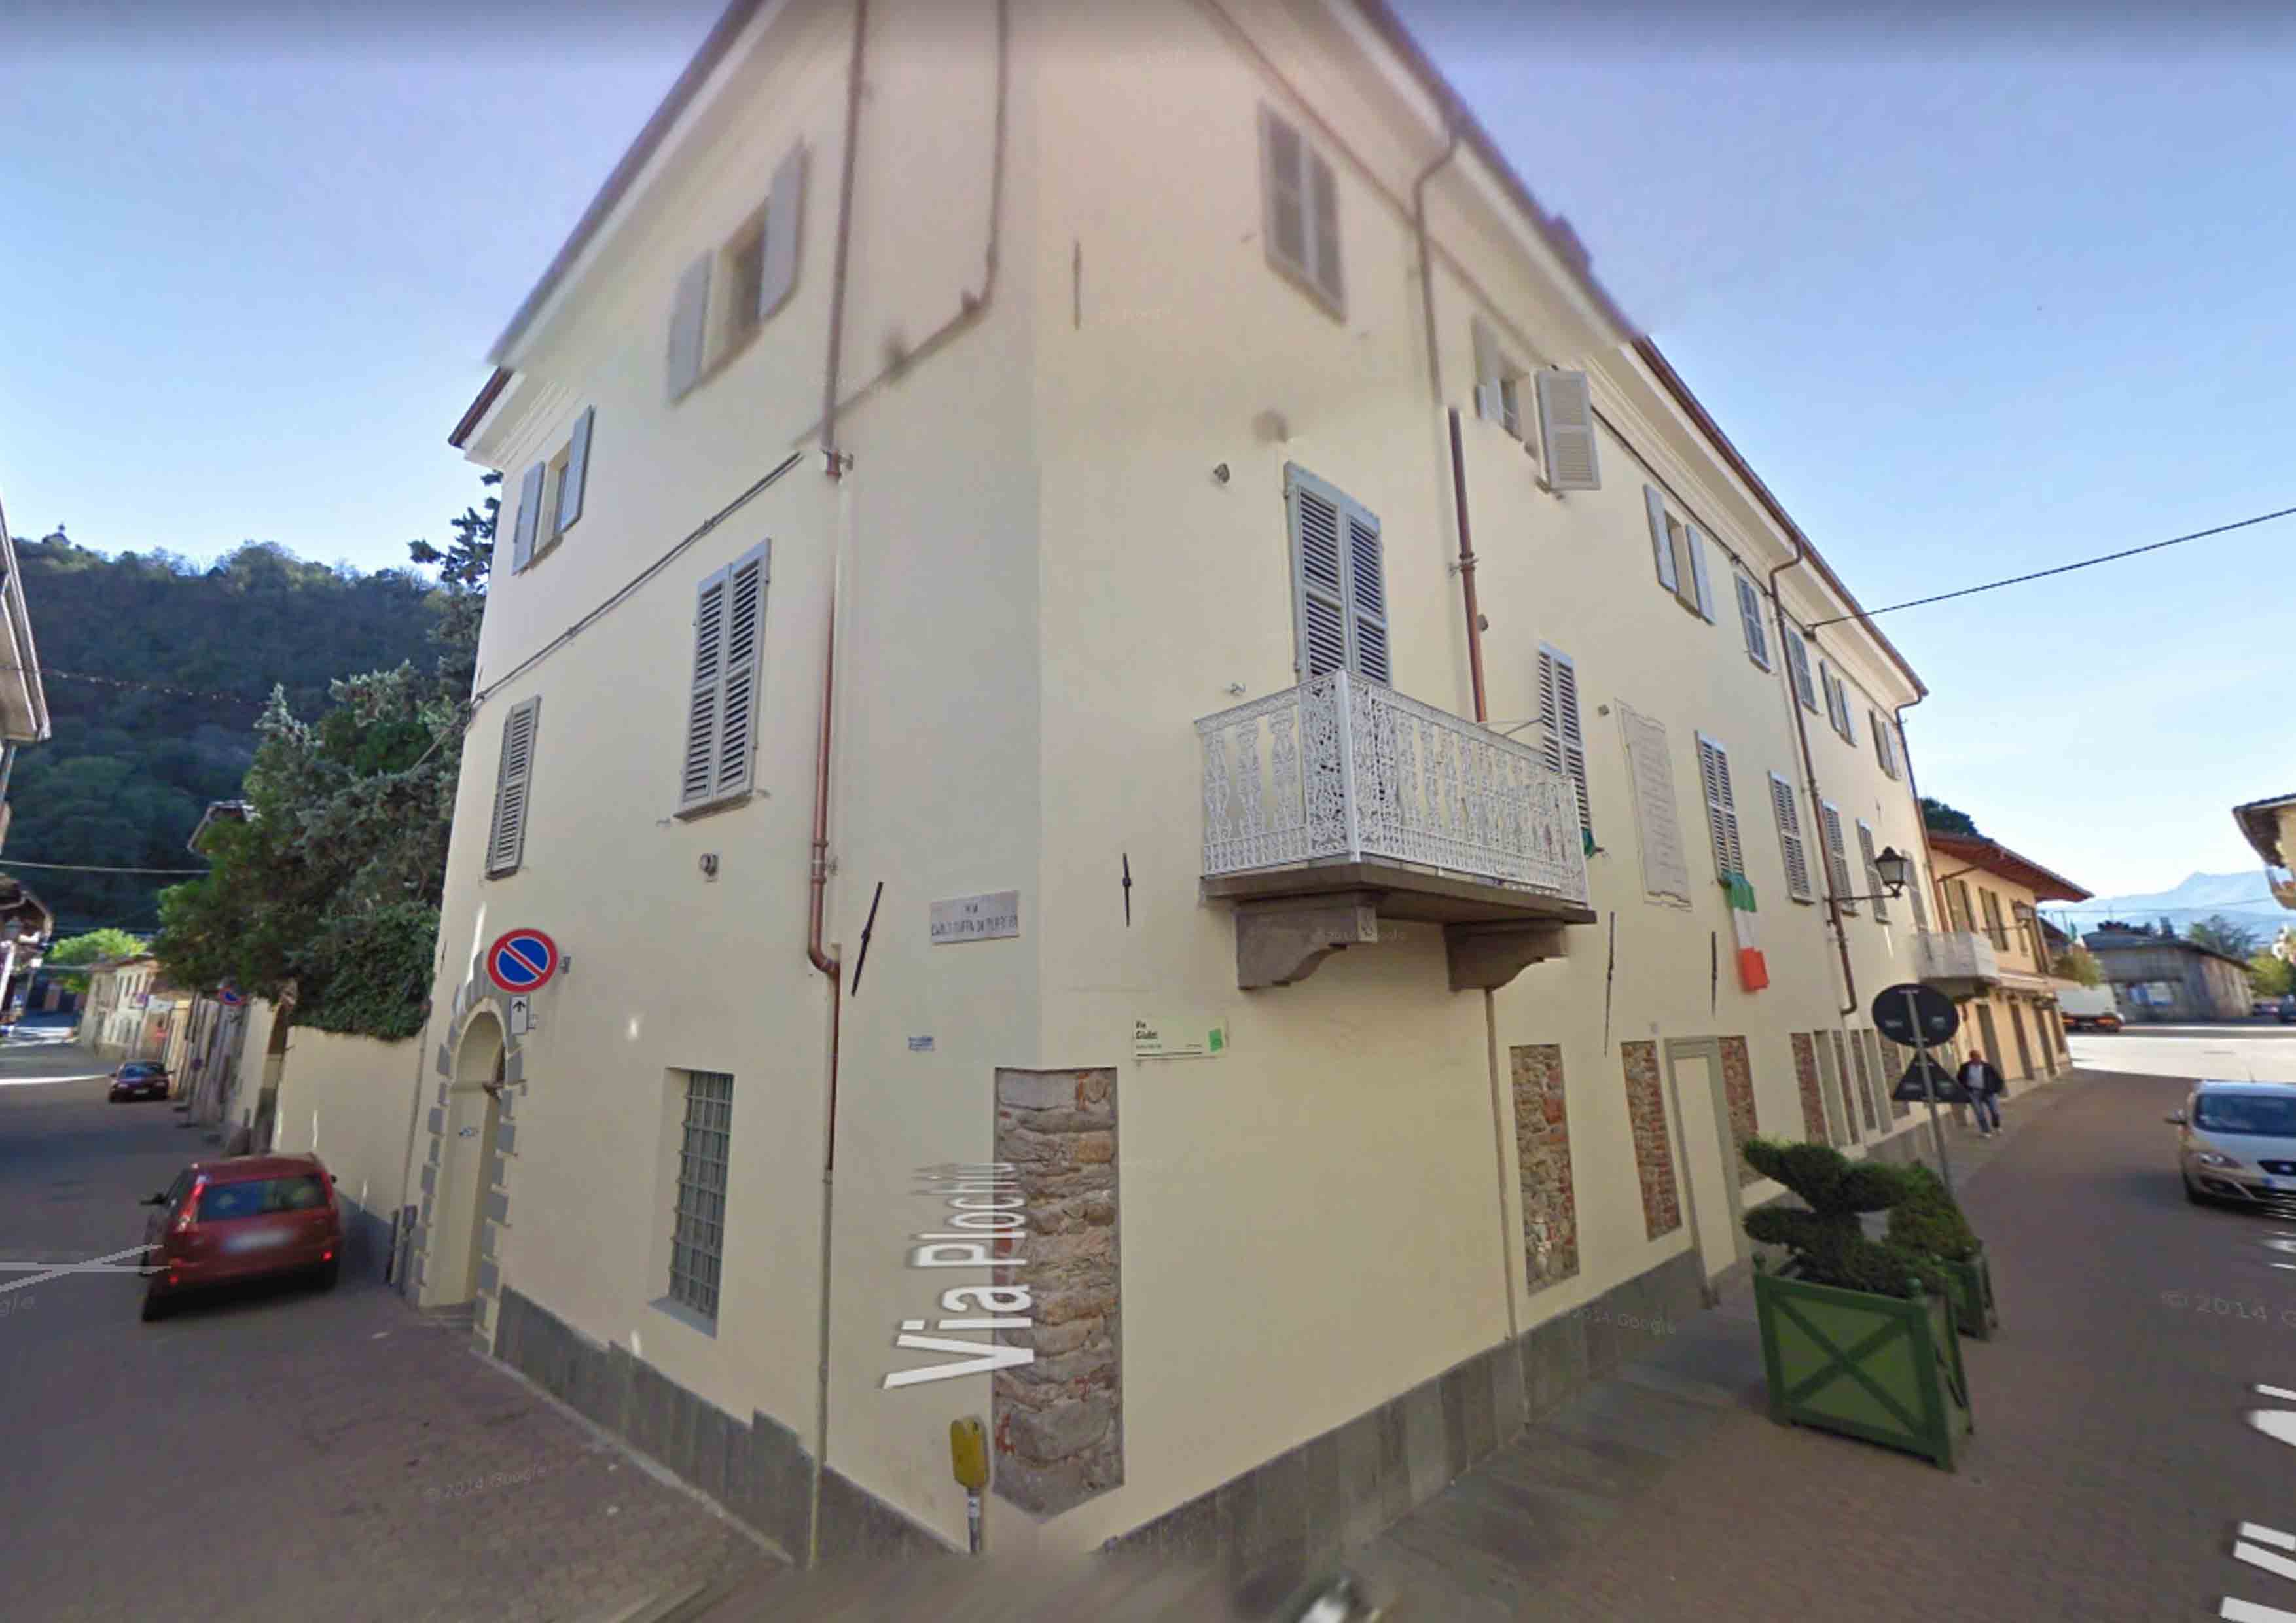 Palazzo Buffa di Perrero (palazzo) - Cavour (TO)  (XVIII, inizio)